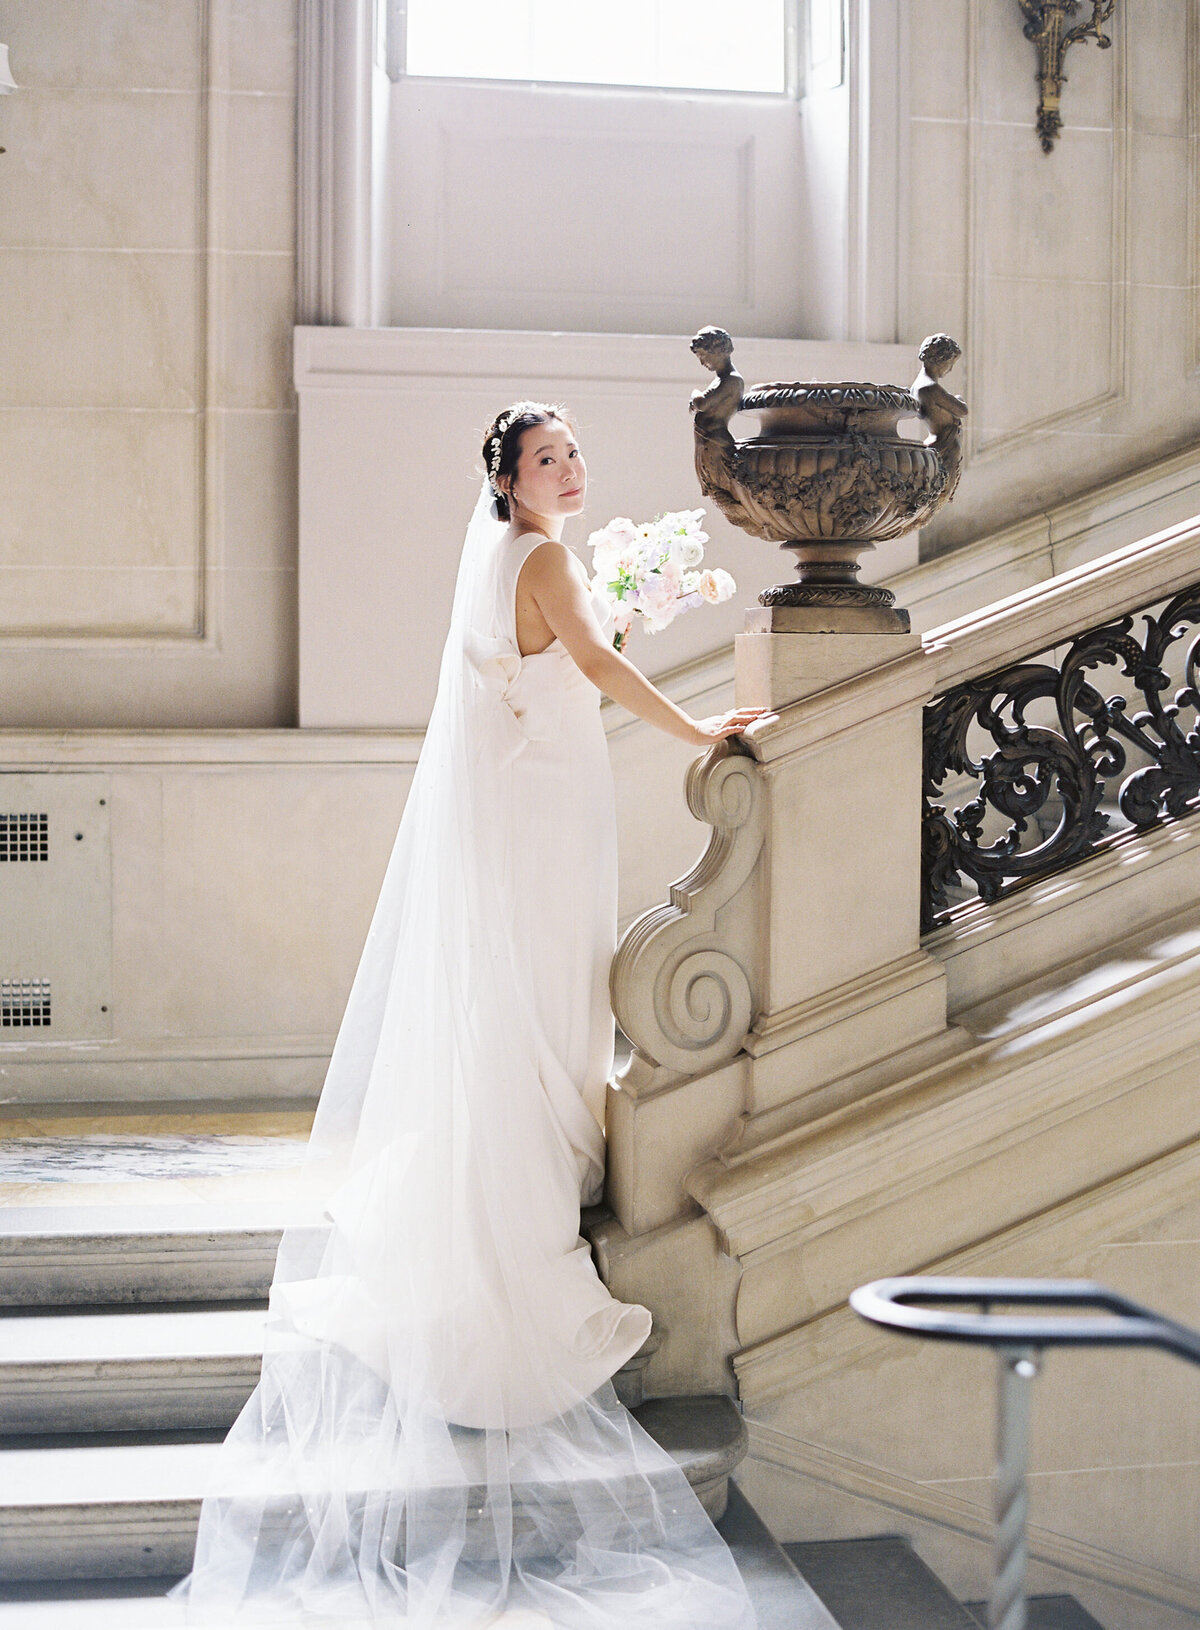 Larz Anderson House Bride in Washington, D.C.